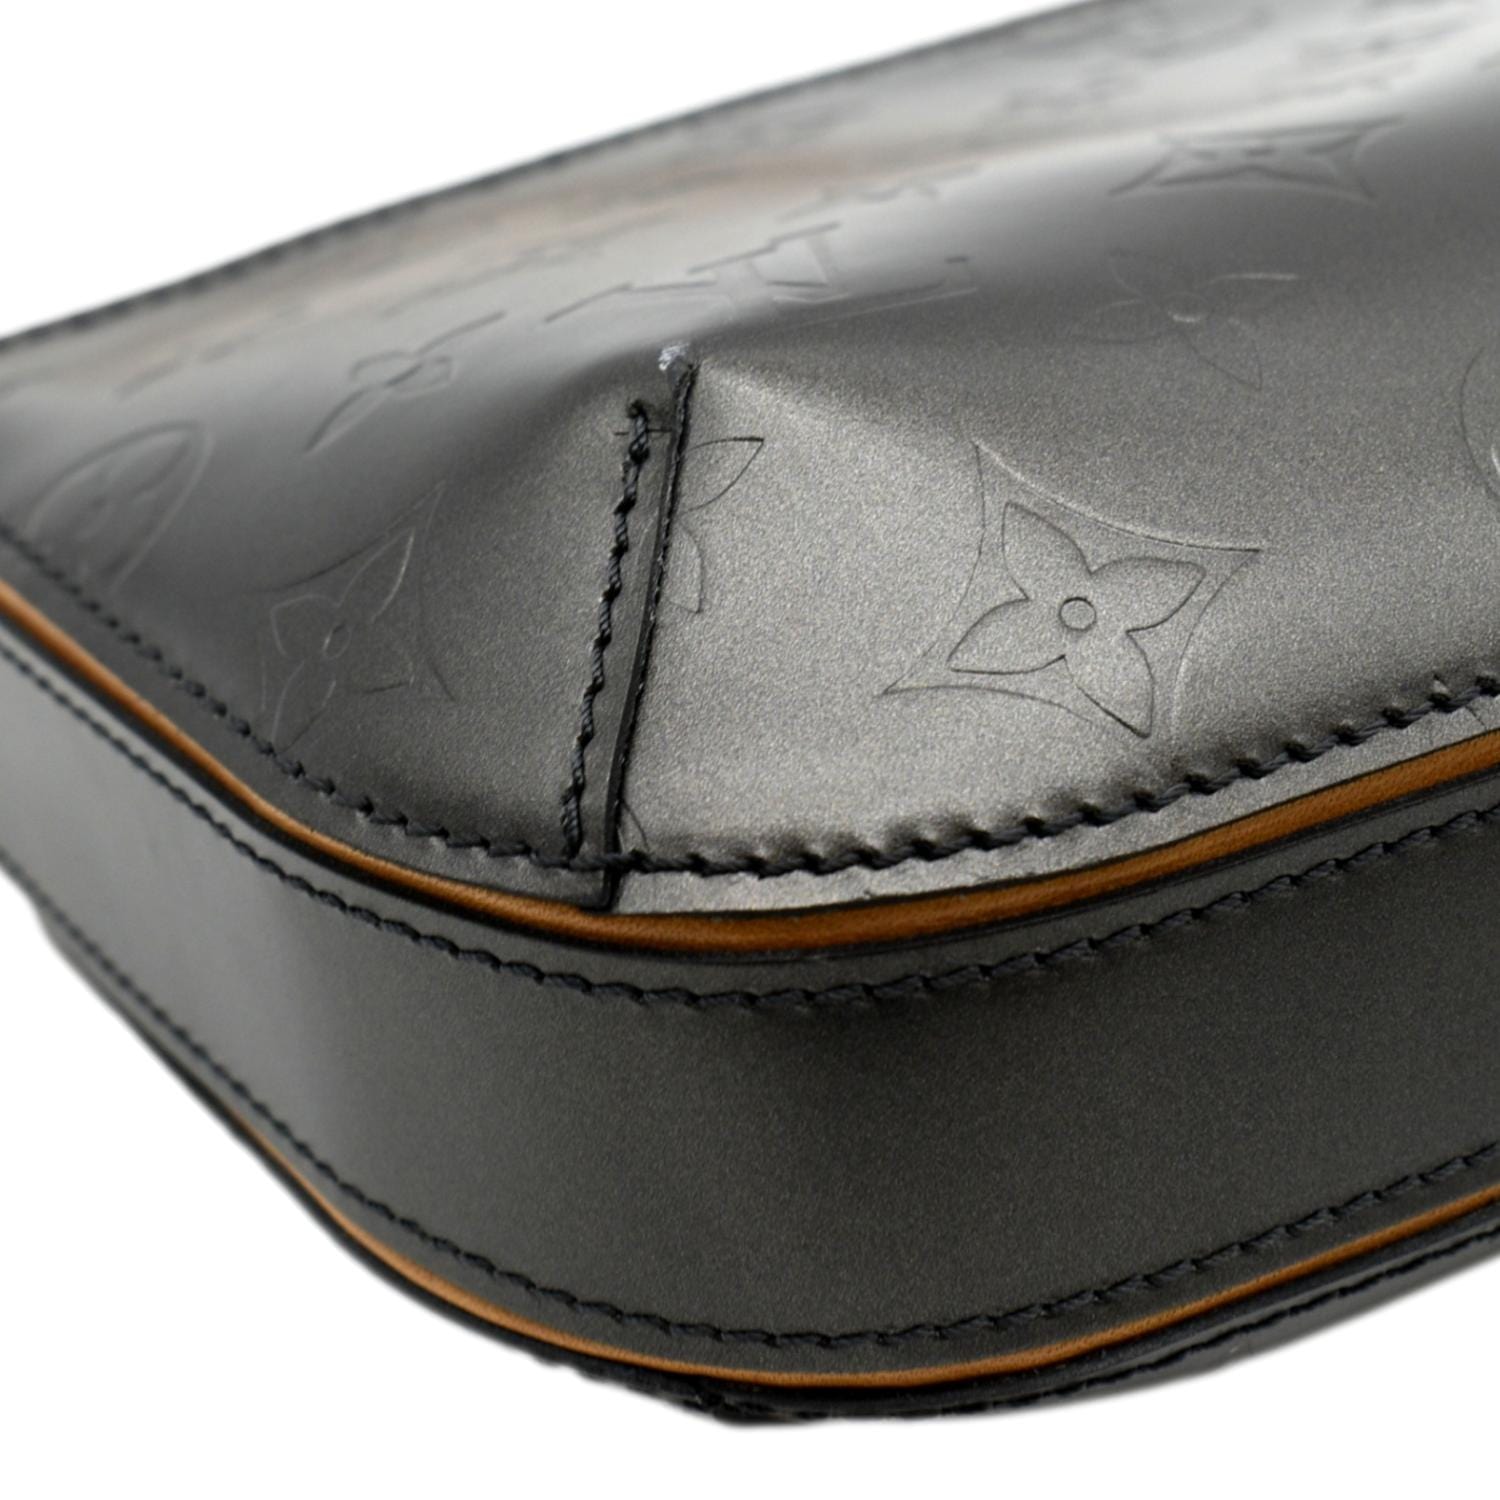 LV Monogram Mat Fowler : r/handbags